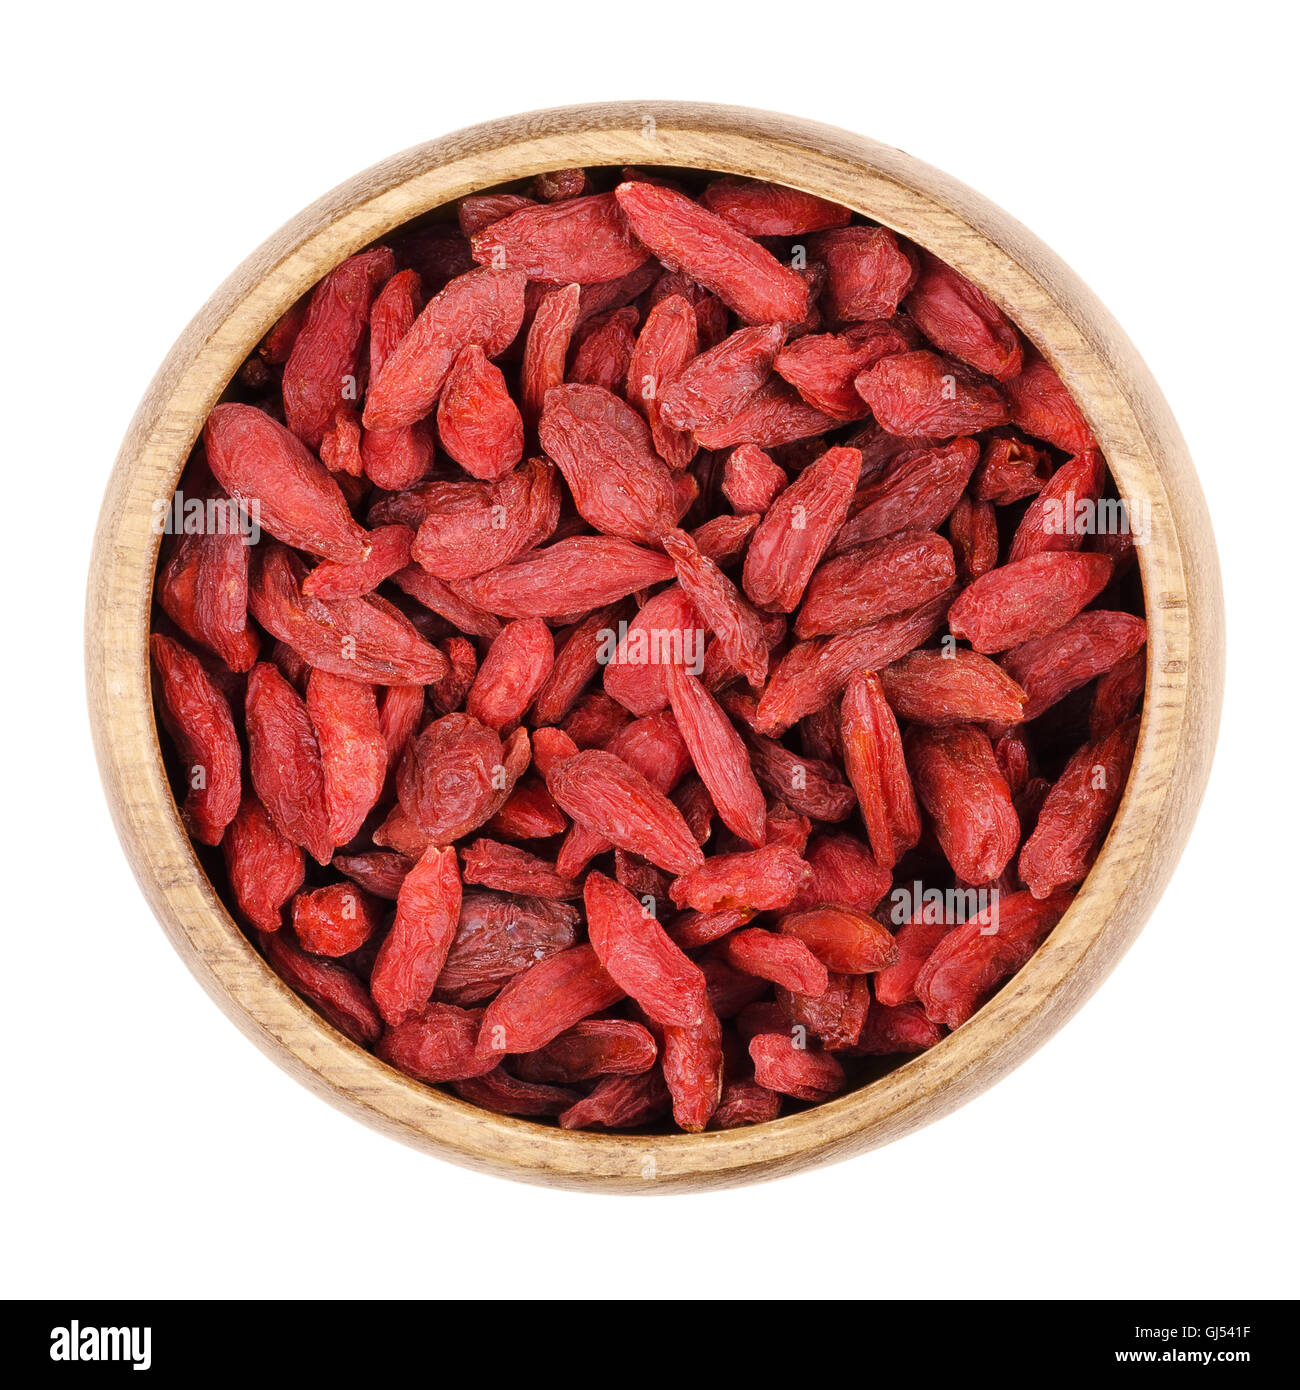 Goji Bayas en un recipiente sobre un fondo blanco, también llamado Bayas de Goji. Frutas rojas secas y semillas de Lycium barbarum. Foto de stock